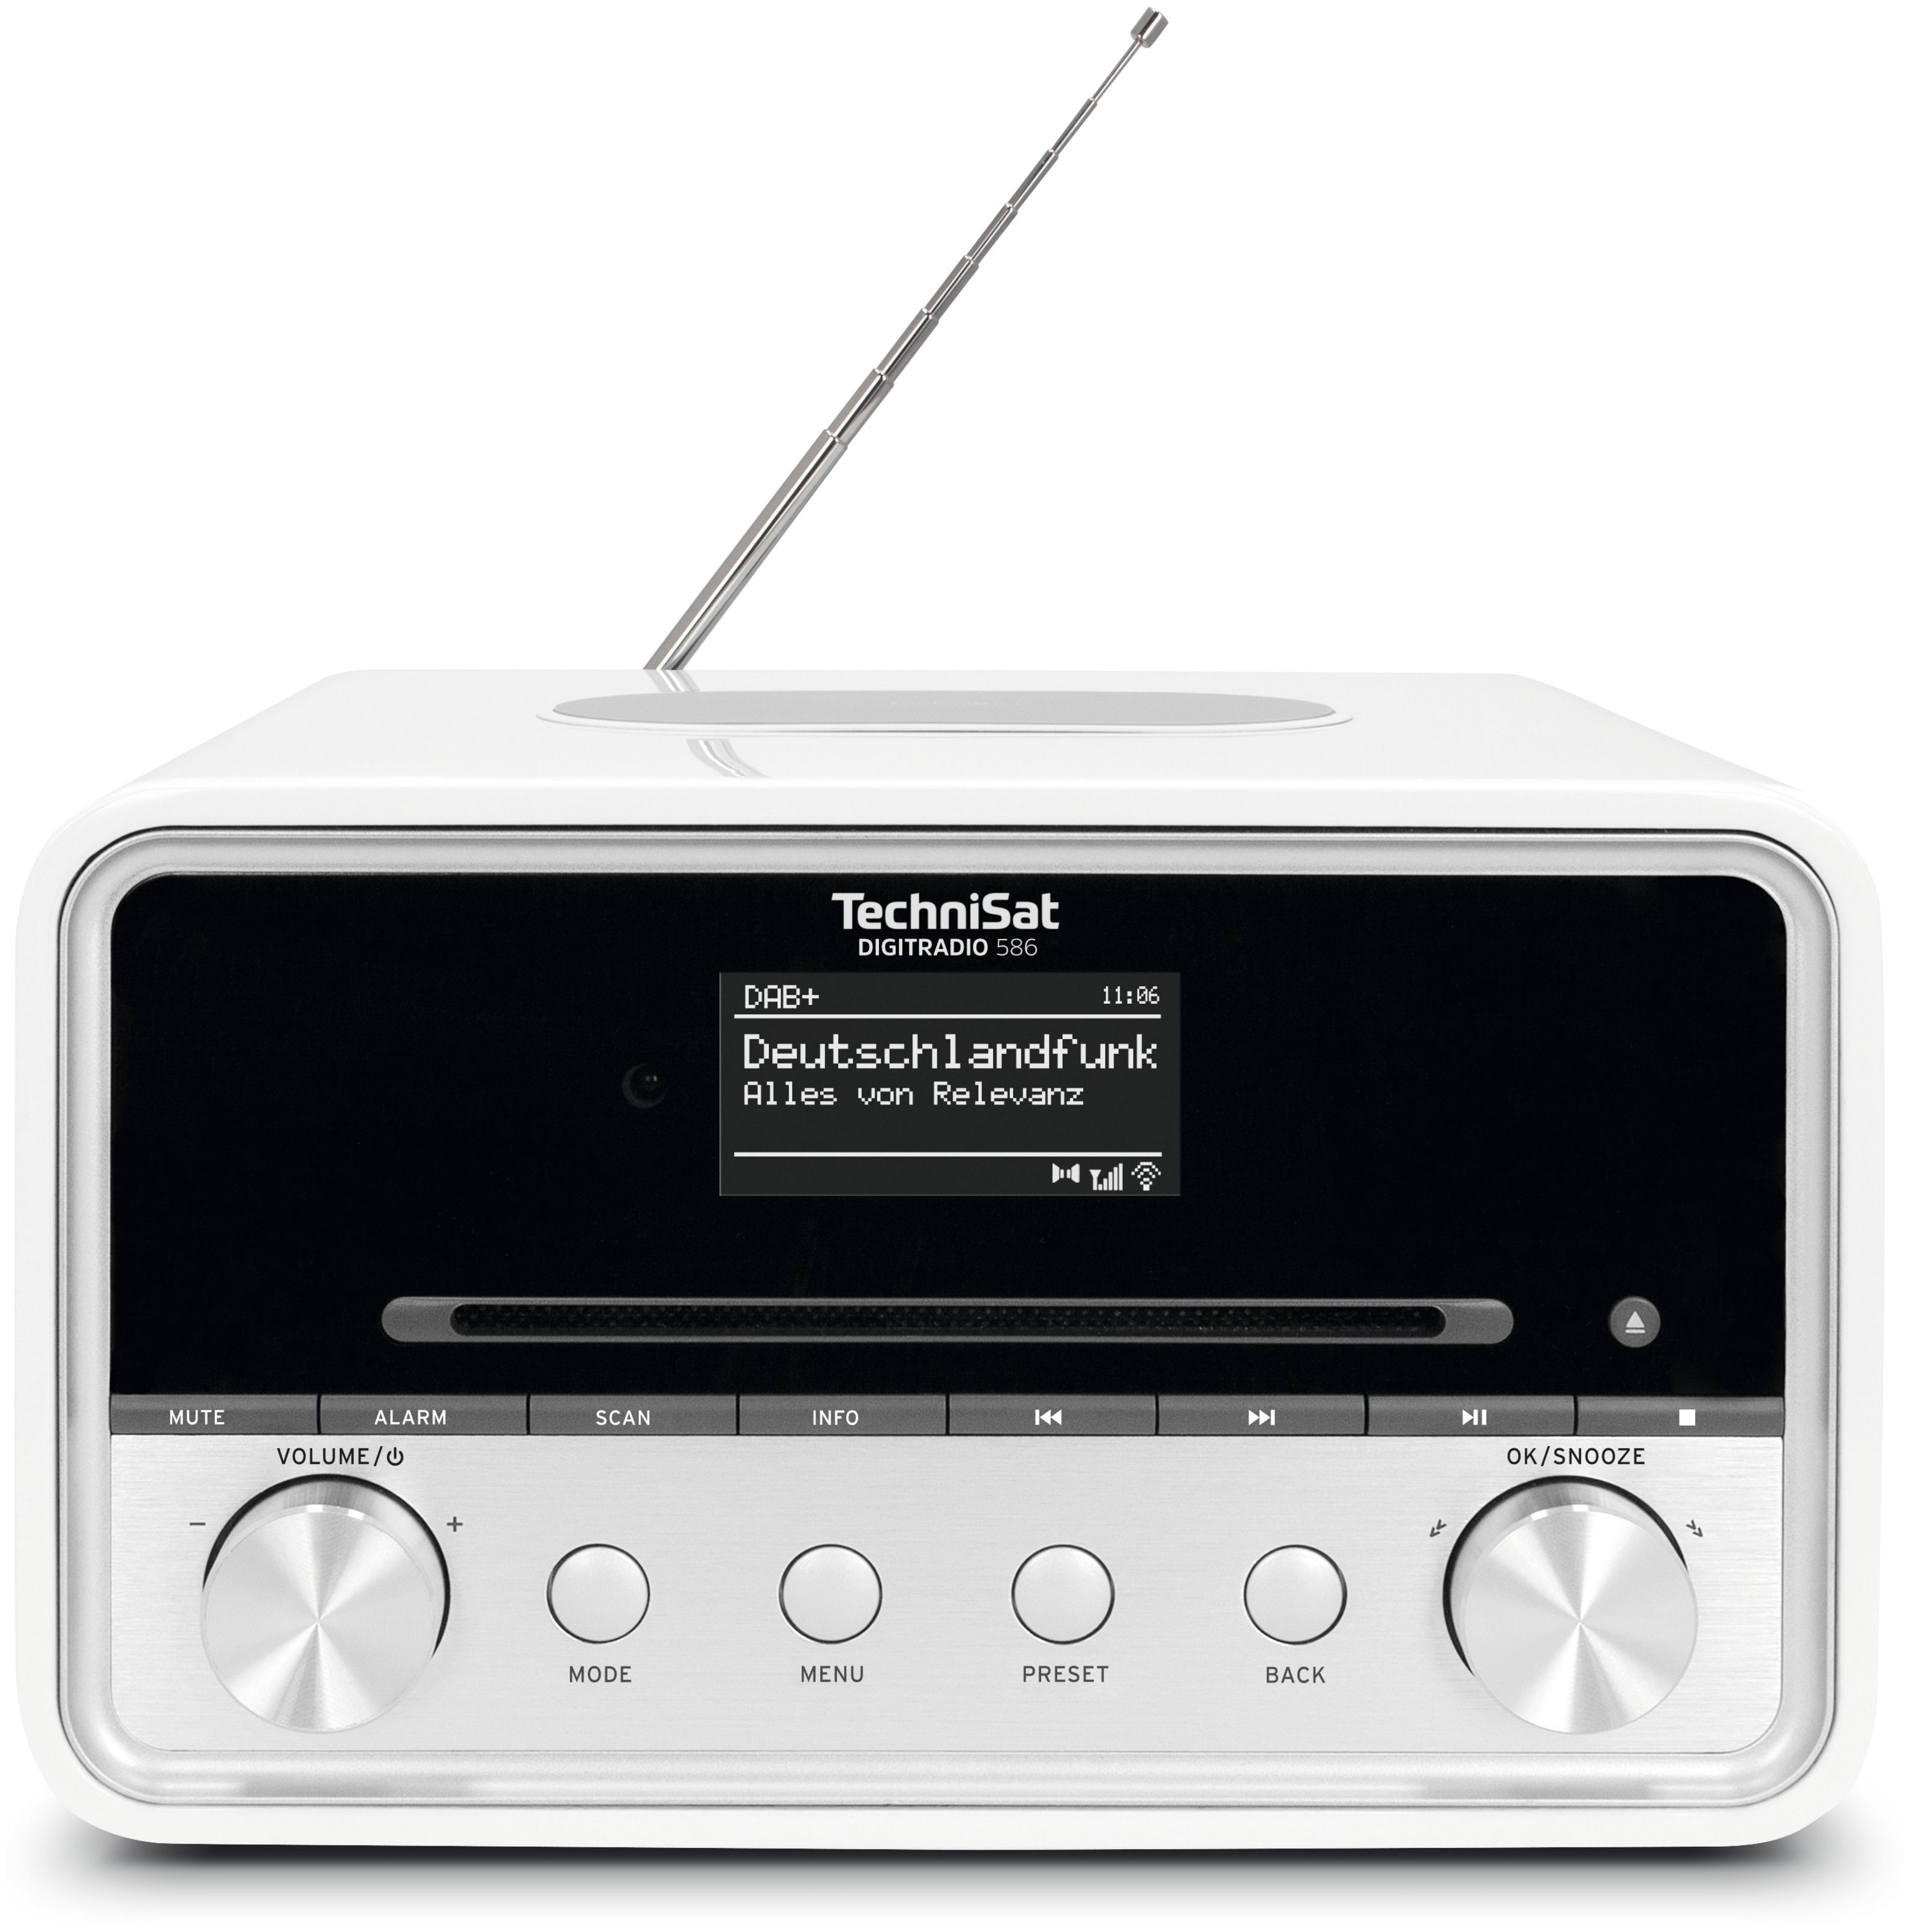 TechniSat Digitradio 586 (Weiß) Persönlich DAB+, Bluetooth FM von expert Technomarkt Radio